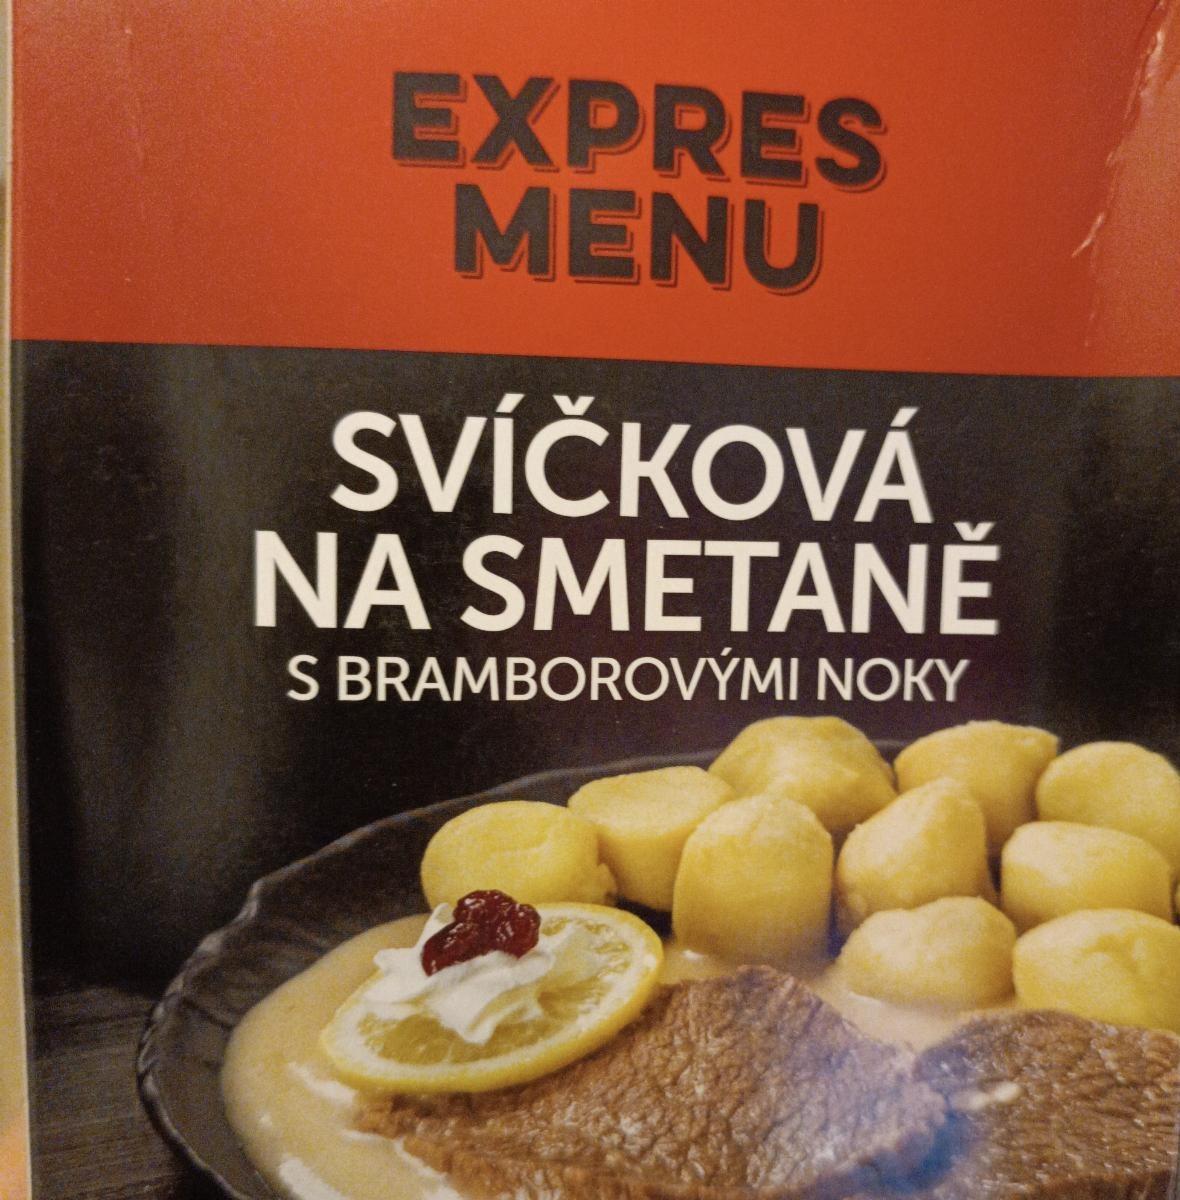 Fotografie - Svíčková na smetaně s bramborovými noky Expres menu